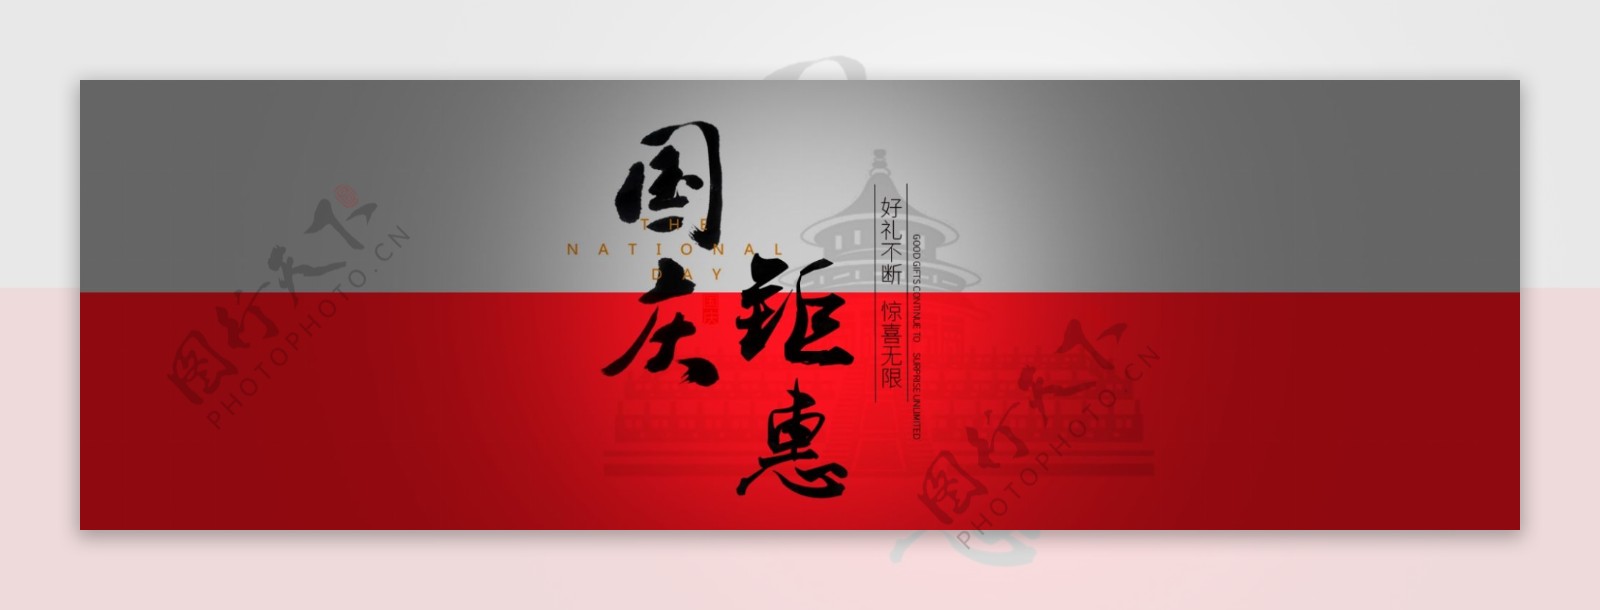 国庆banner